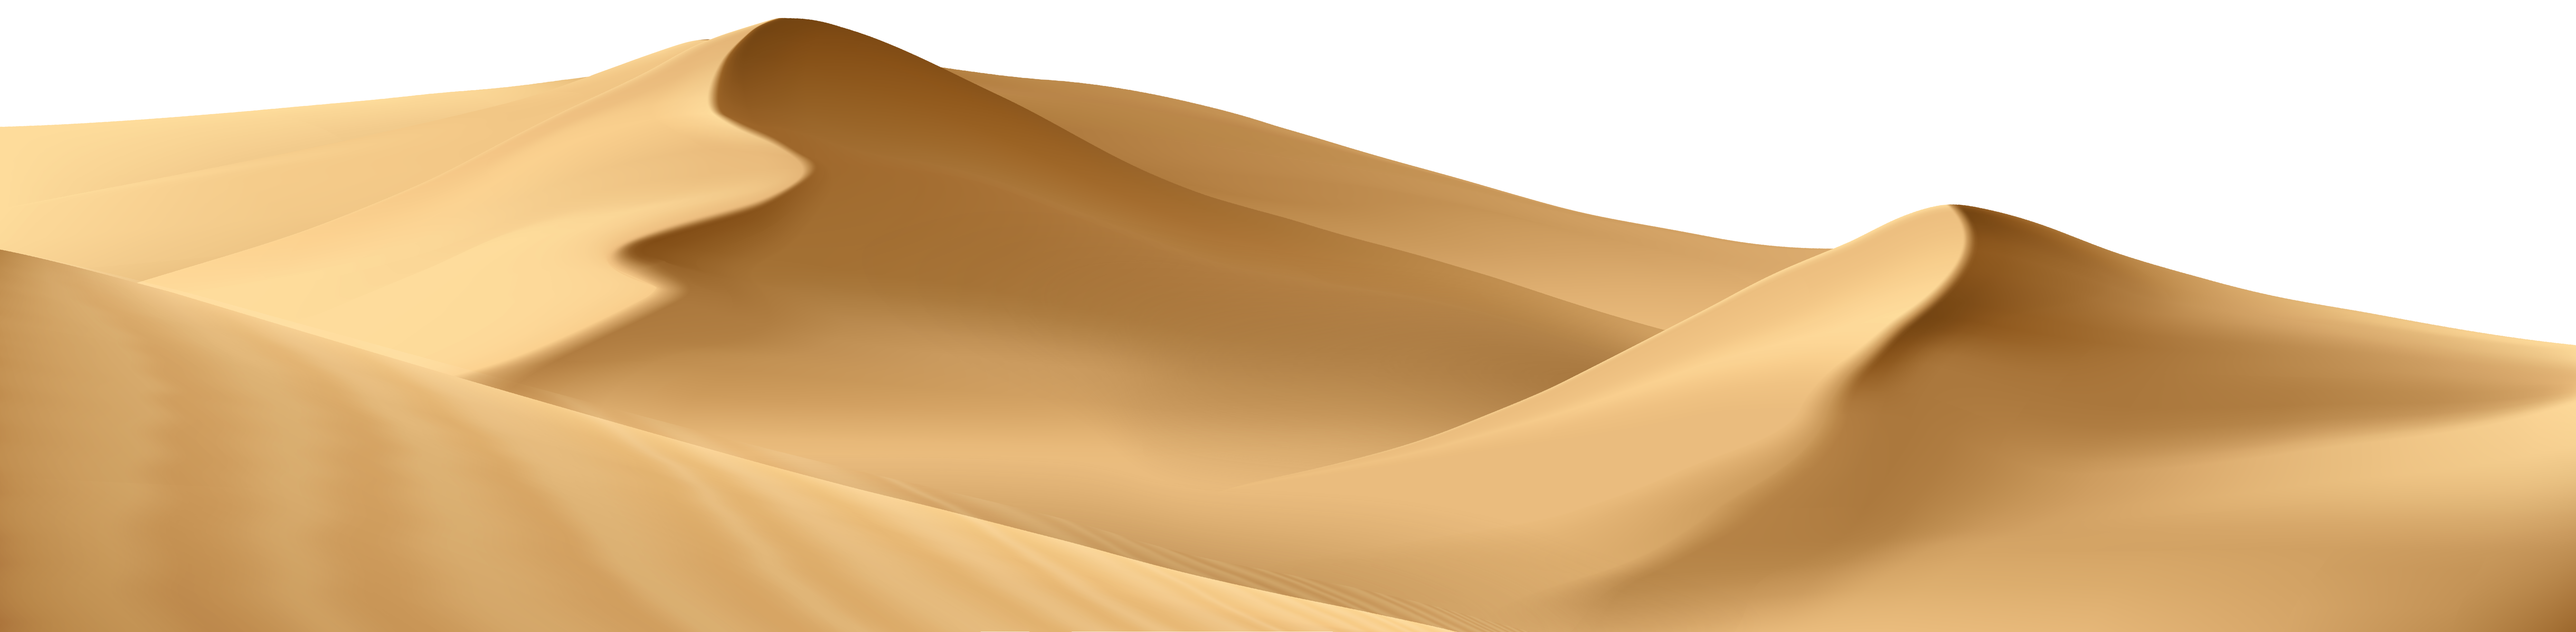 صحراء الرمال PNG شفافة HD الصورة